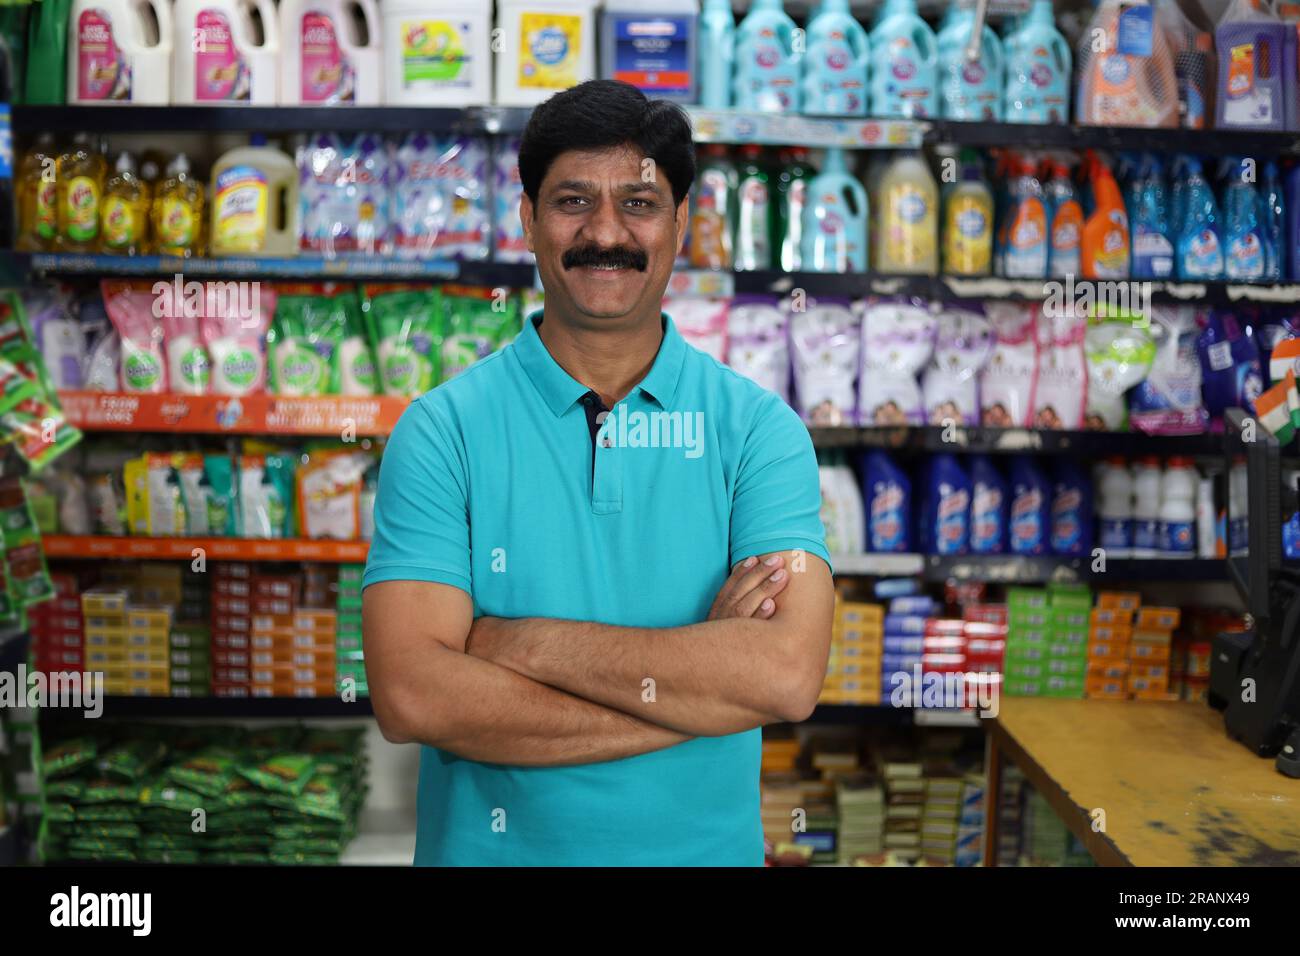 Ritratto di un uomo indiano felice e sorridente che acquista in un negozio di alimentari. Comprare della spesa per casa in un supermercato. Uomo sicuro e in forma nei baffi. Foto Stock